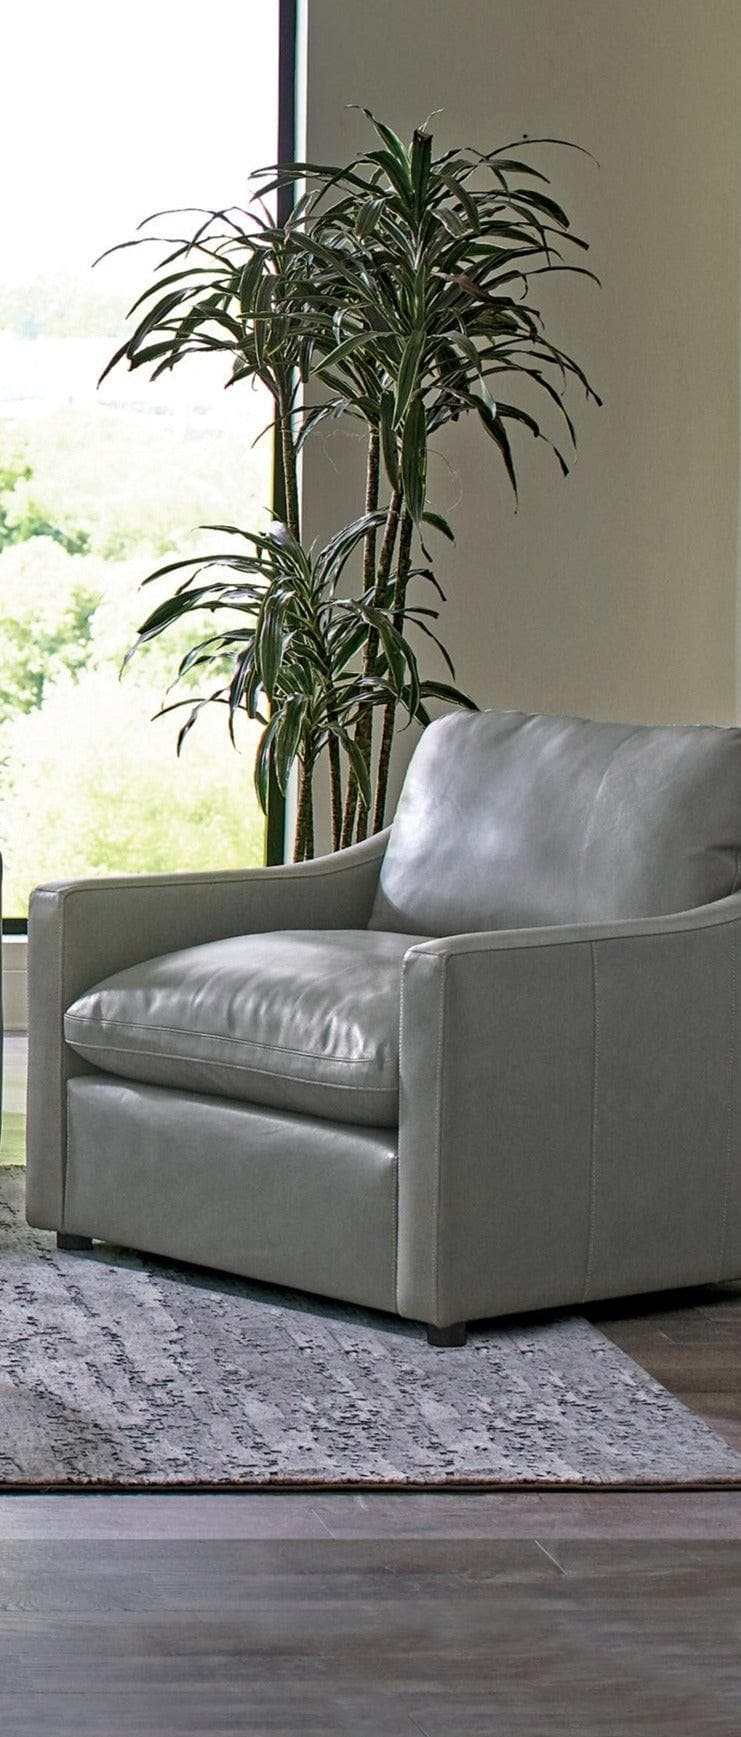 Grayson Grey 3pc Living Room Set - Ornate Home